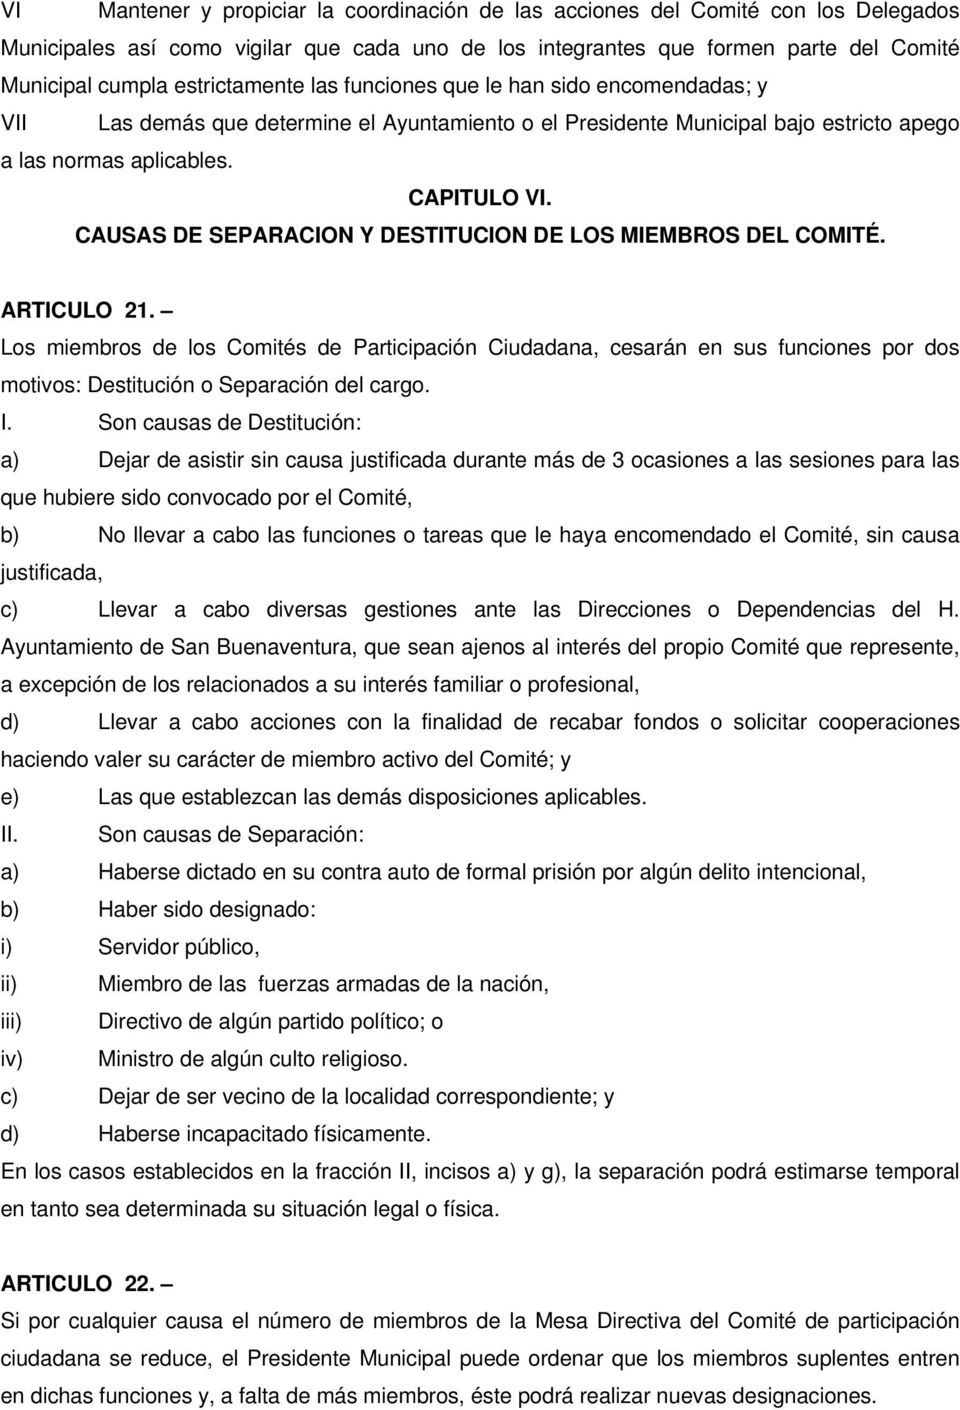 CAUSAS DE SEPARACION Y DESTITUCION DE LOS MIEMBROS DEL COMITÉ. ARTICULO 21.